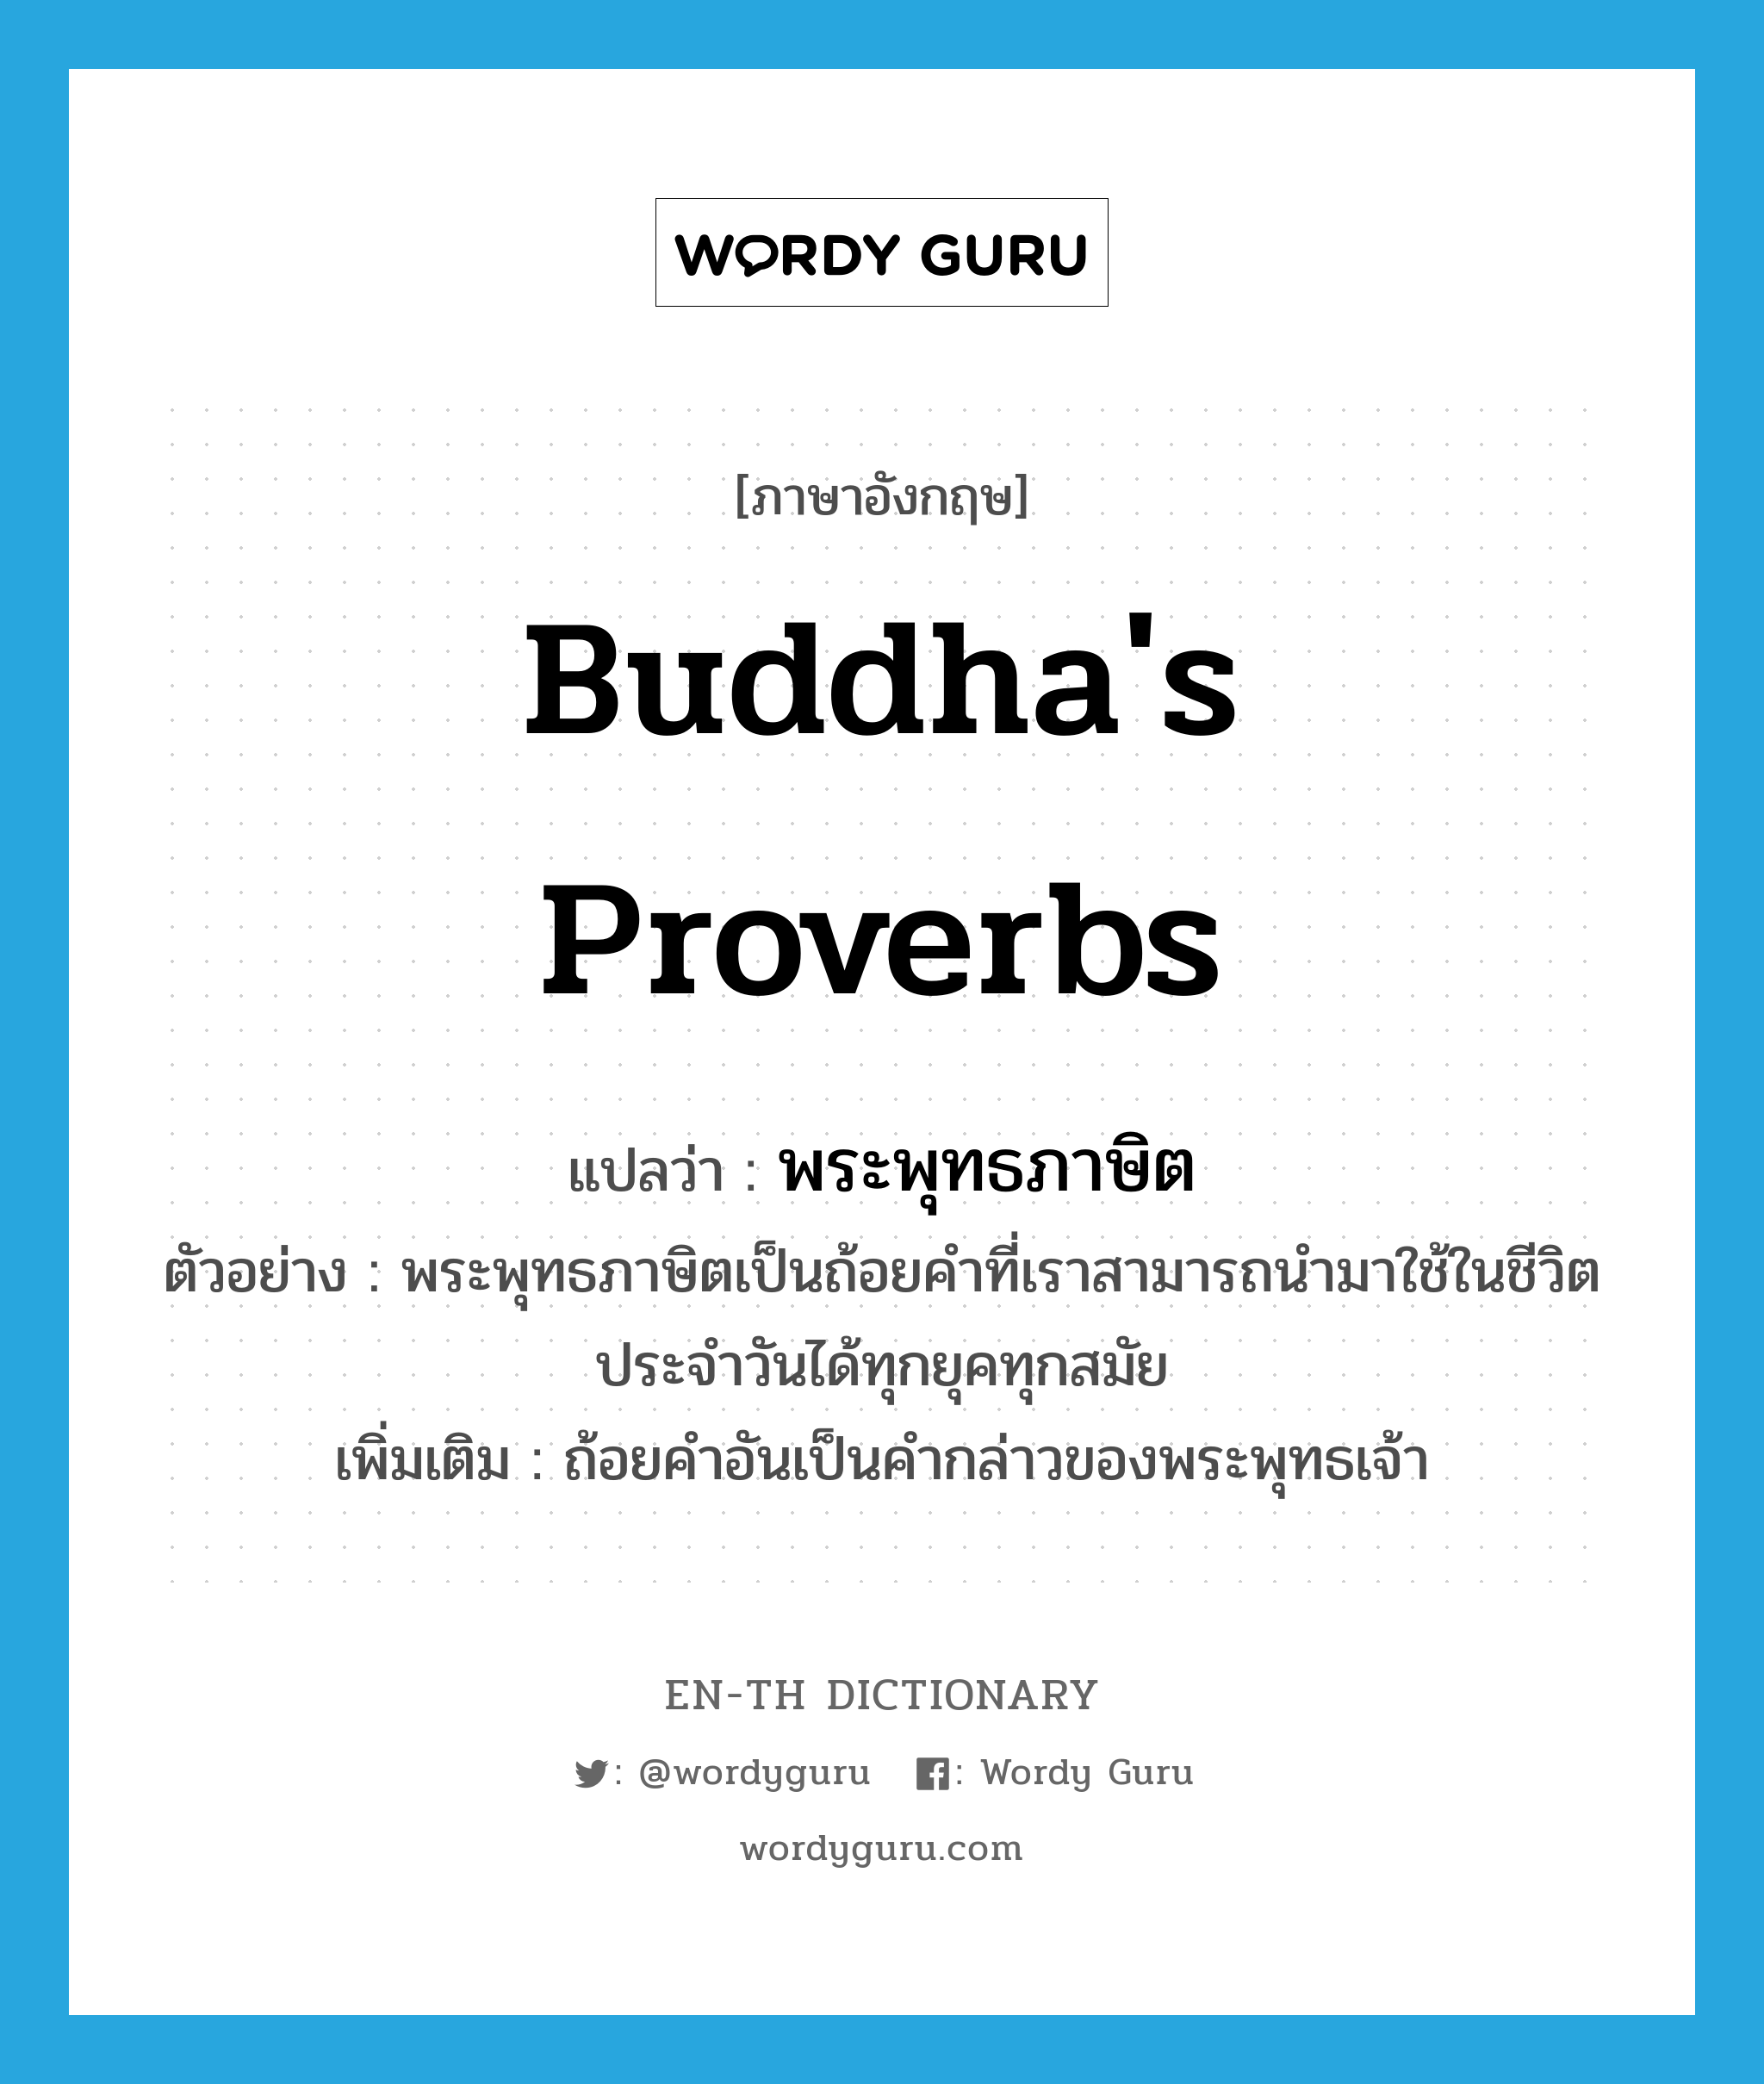 พระพุทธภาษิต ภาษาอังกฤษ?, คำศัพท์ภาษาอังกฤษ พระพุทธภาษิต แปลว่า Buddha's proverbs ประเภท N ตัวอย่าง พระพุทธภาษิตเป็นถ้อยคำที่เราสามารถนำมาใช้ในชีวิตประจำวันได้ทุกยุคทุกสมัย เพิ่มเติม ถ้อยคำอันเป็นคำกล่าวของพระพุทธเจ้า หมวด N